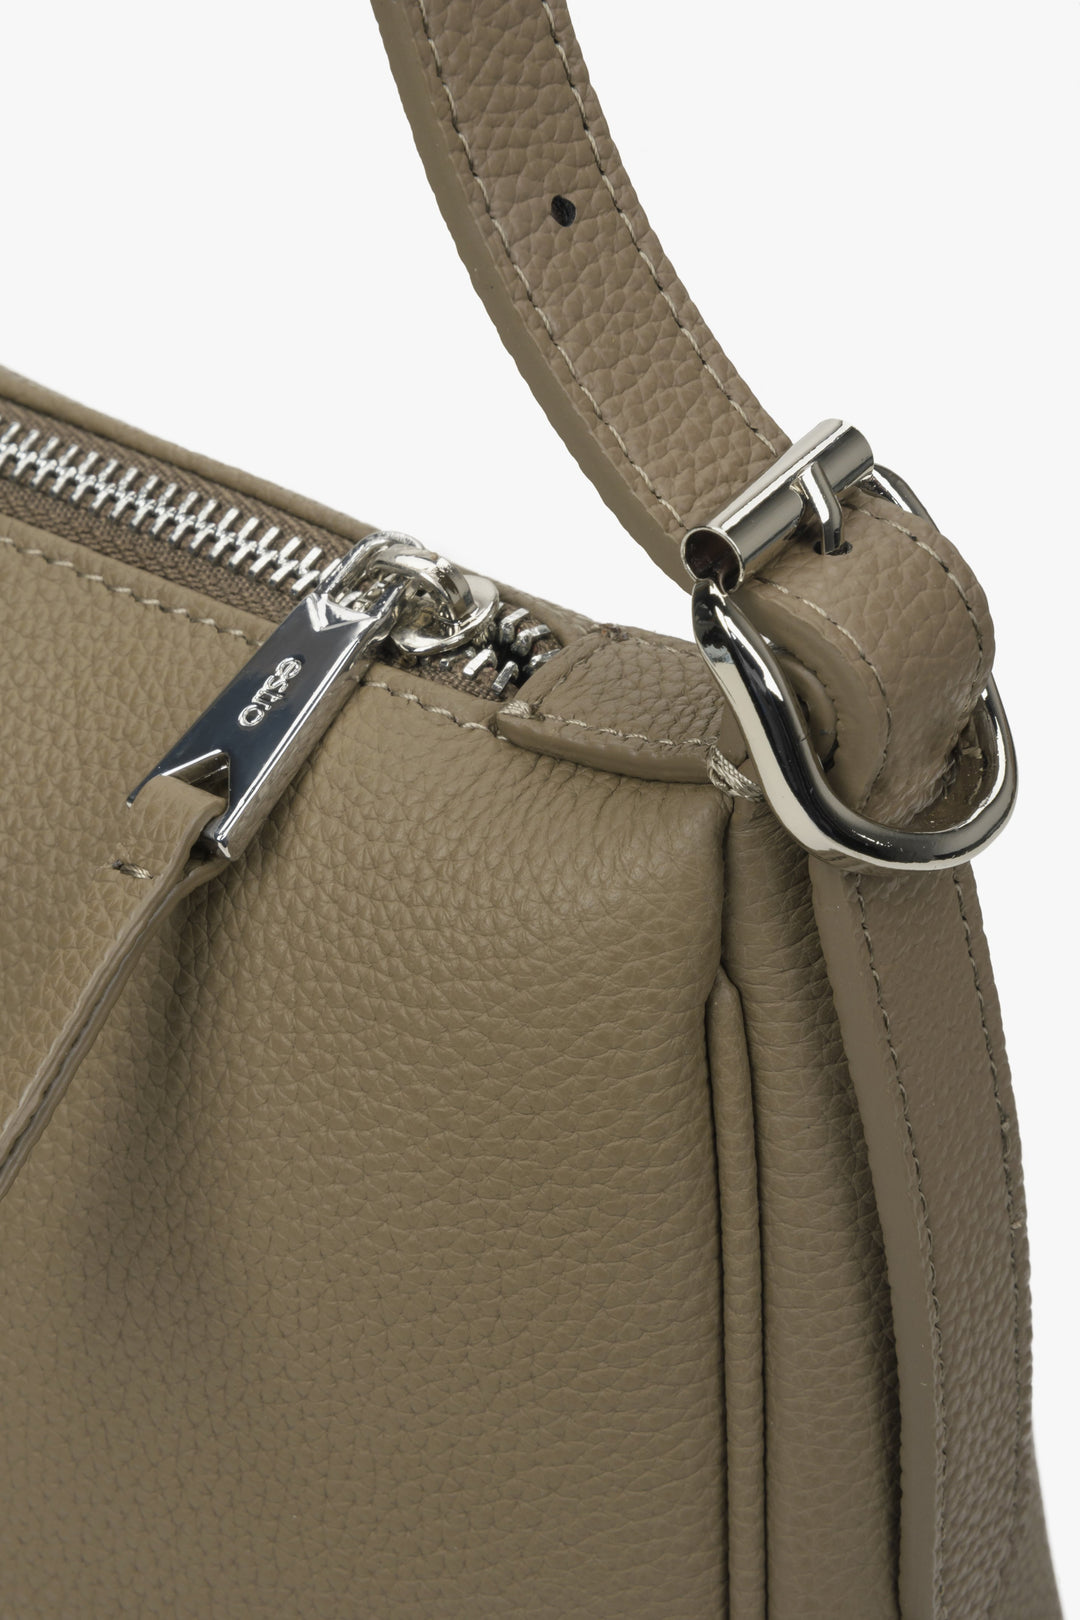 Skórzana torebka na ramię w kolorze szarobeżowym - zbliżenie na detale.